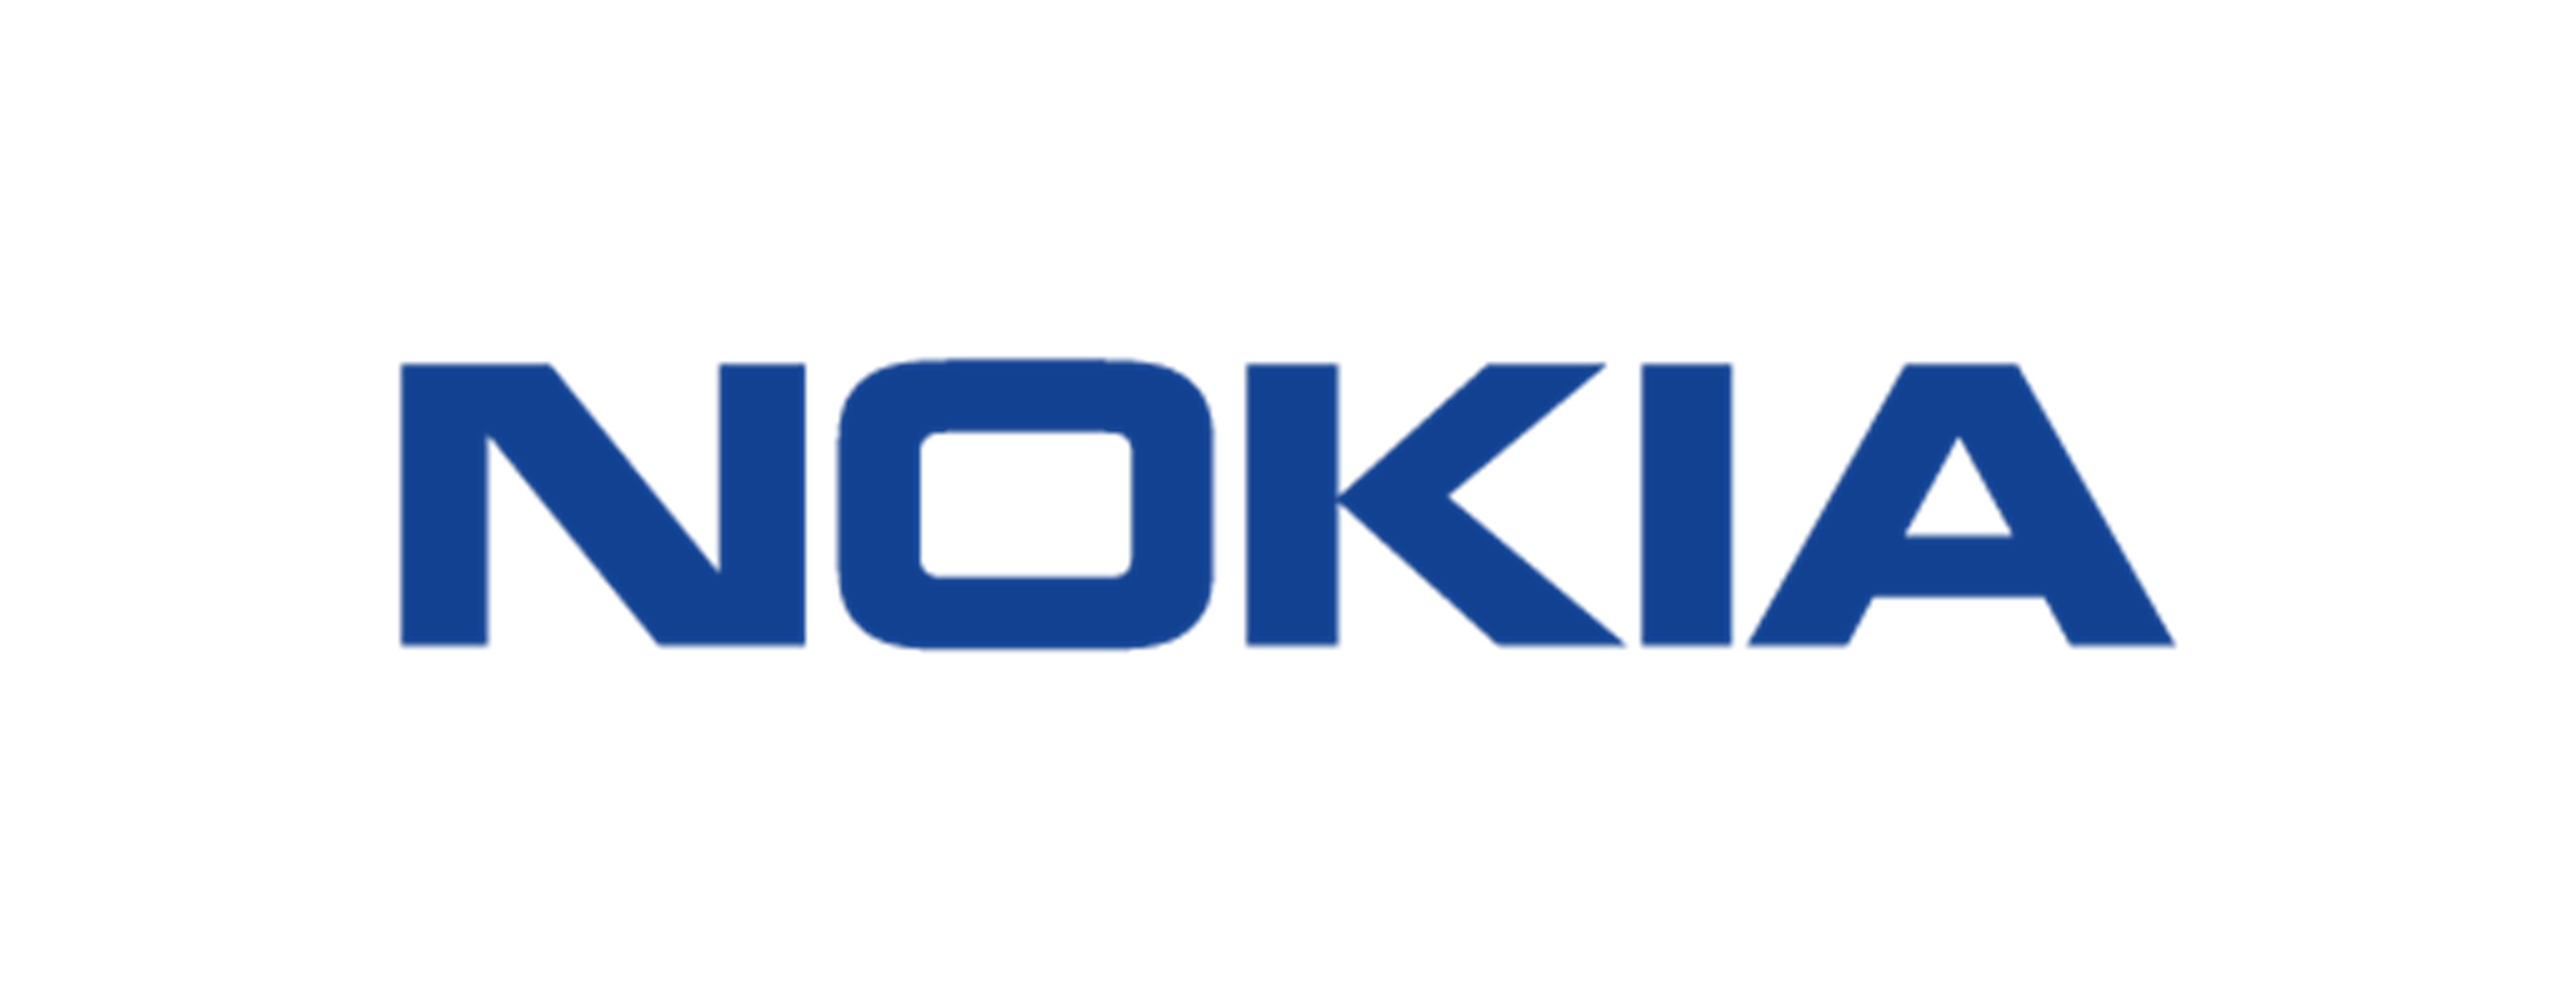             Logo Nokia        